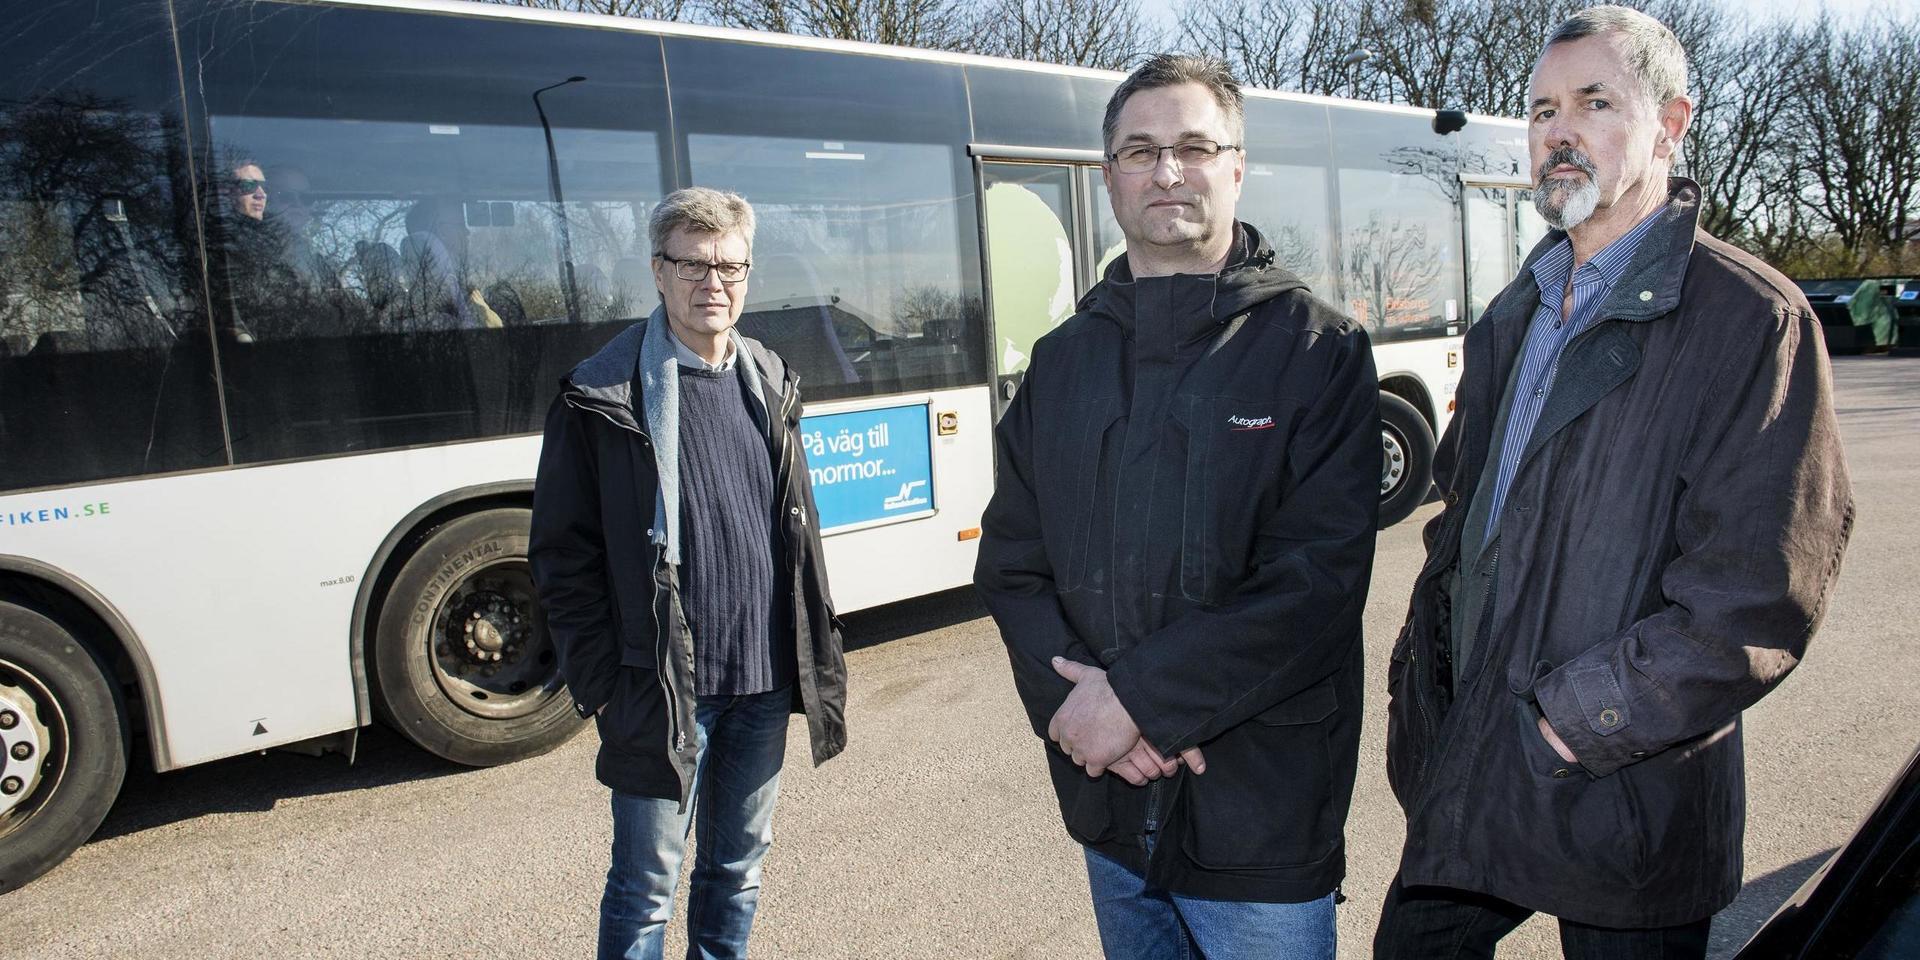 Trönninge samhällsförening, här företrädd av från vänster Göran Nilsson, Jörgen Svensson och Peter Johansson, har länge protesterat mot att Trönninge inte ingått i centrumzonen för Halmstad, vilket lett till dyrare bussresor än till exempel Tylösand.